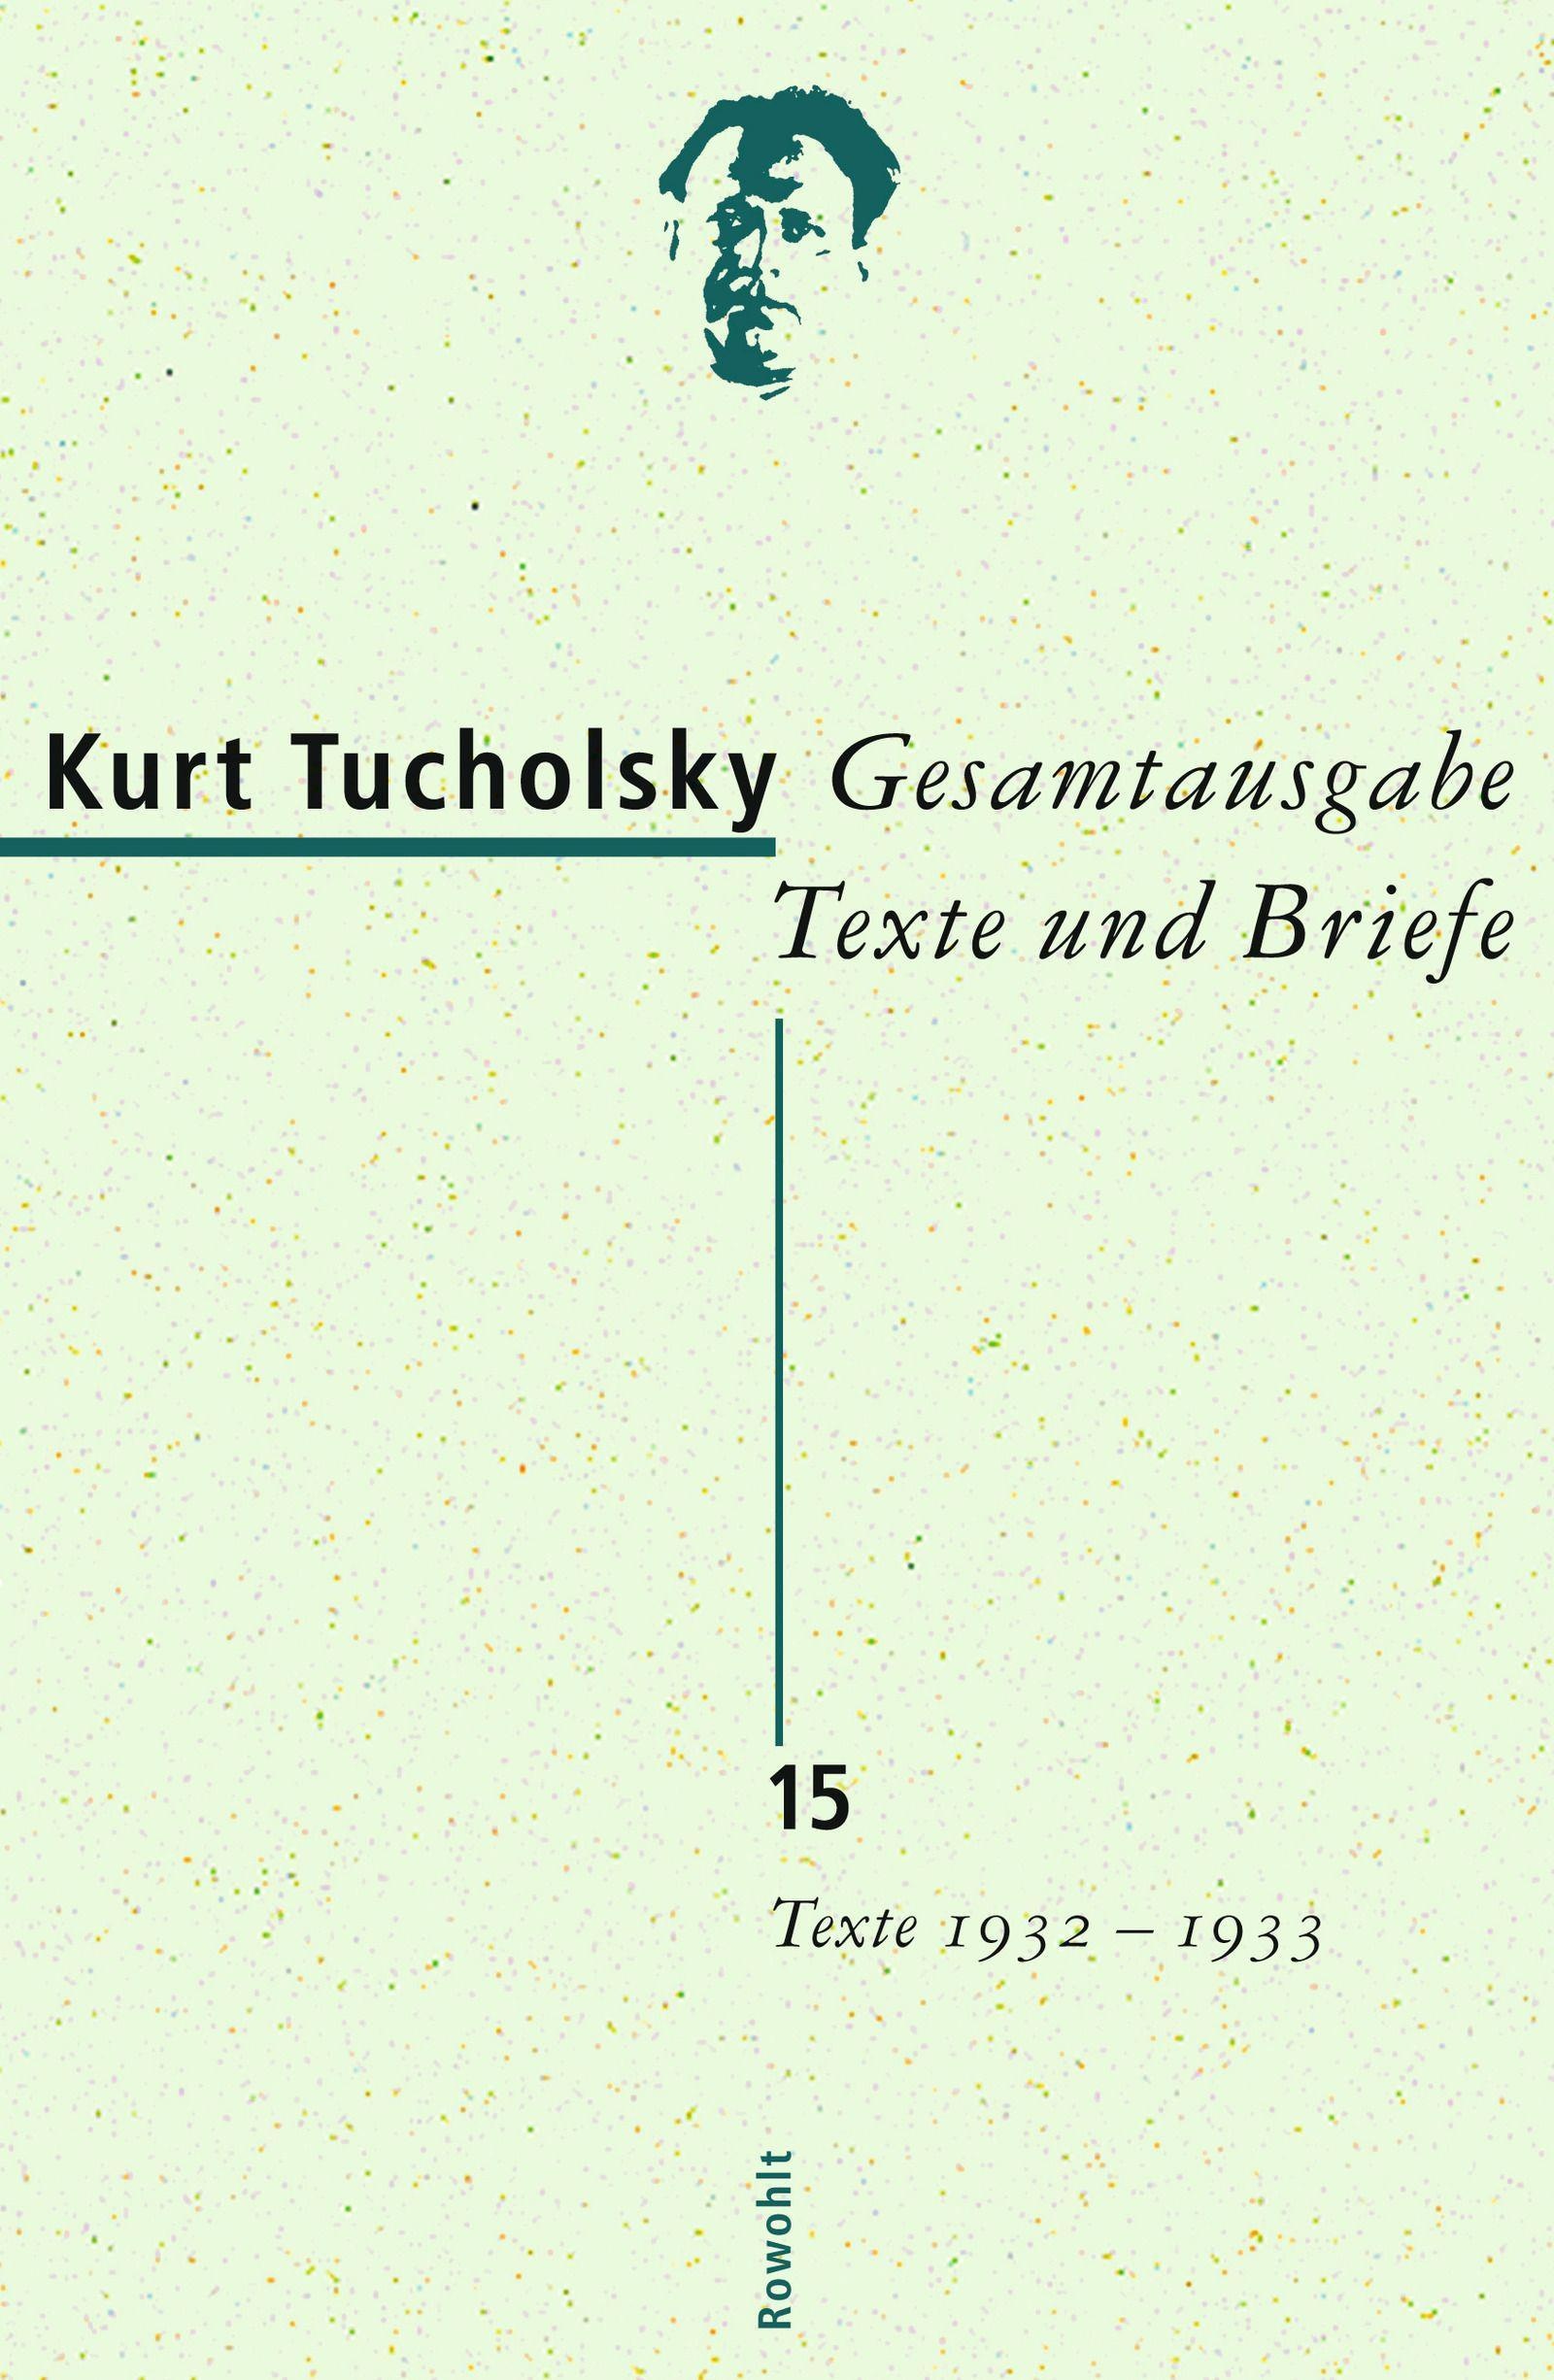 Gesamtausgabe (Band 15): Gesamtausgabe Texte und Briefe 15, Belletristik von Kurt Tucholsky